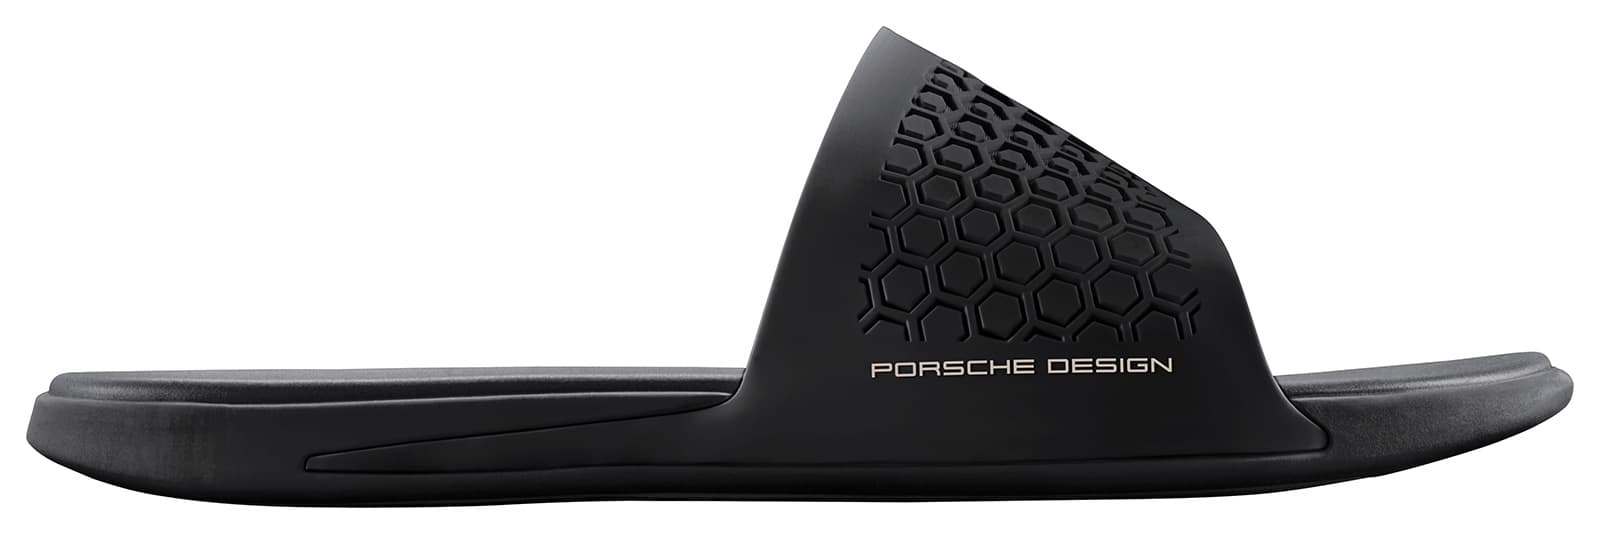 포르쉐 디자인 스포츠 by 아디다스 2017SS 싱글 피스 (2017SS Single Pieces, Porsche Design Sport by adidas) 20